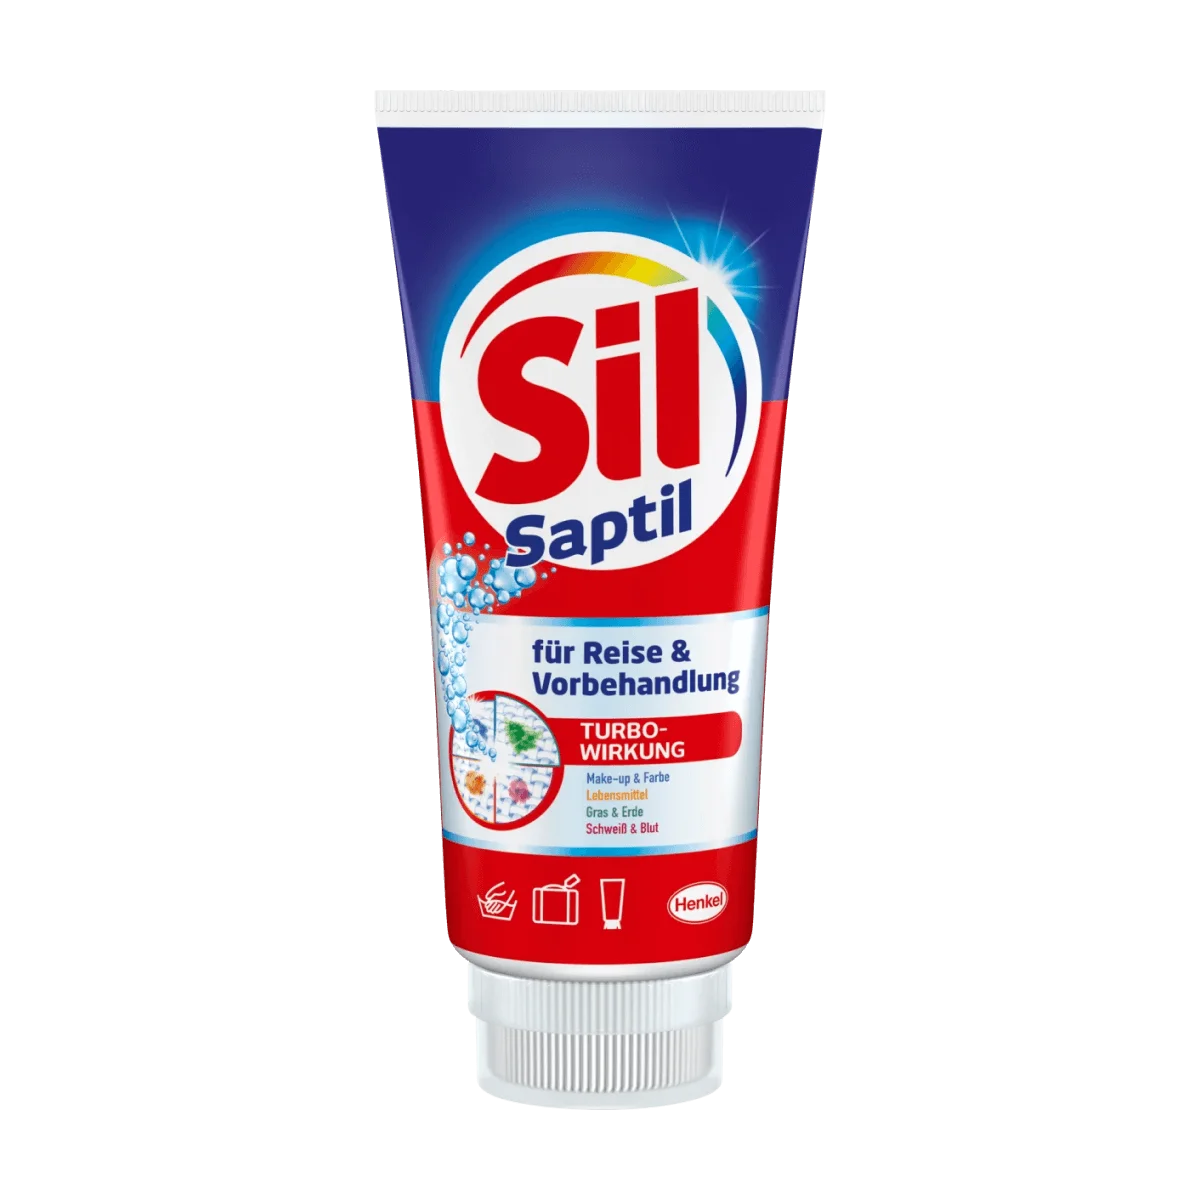 Sil Handwaschmittel Sil Saptil für Reise & Vorbehandlung mit Bürste, 200 ml